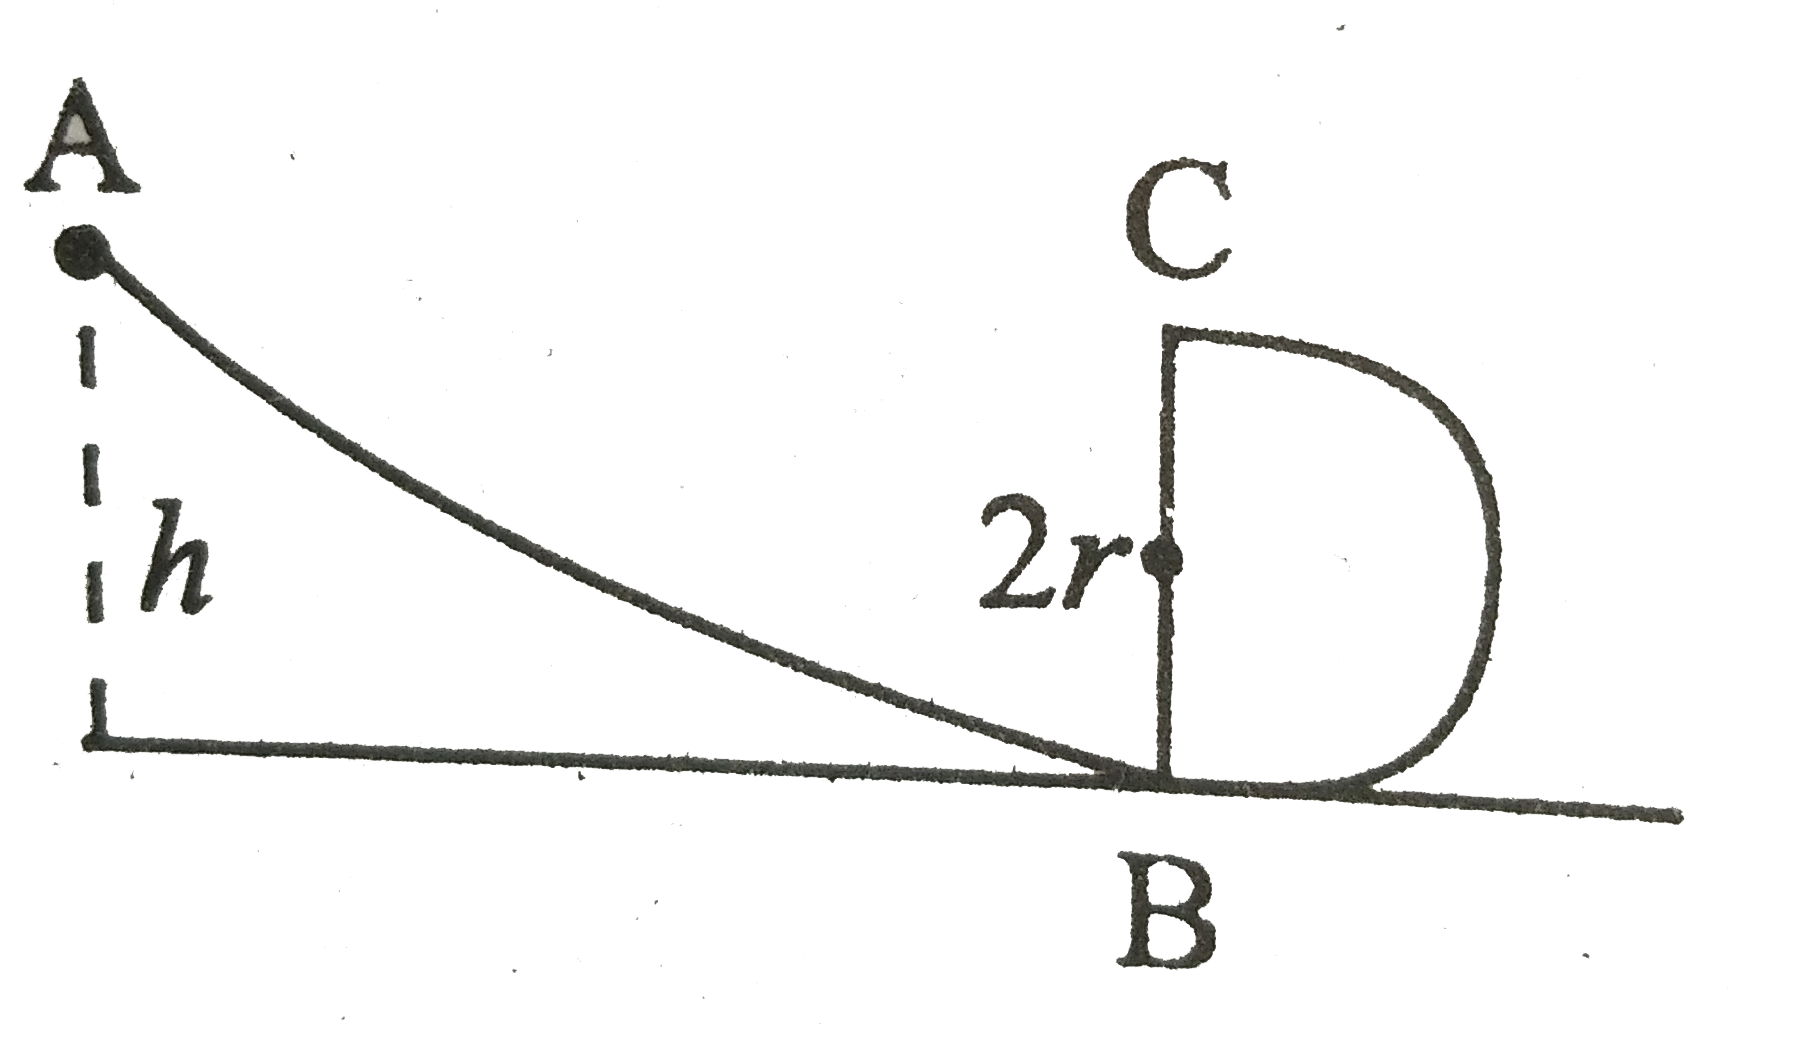 संलग्न चित्र में  ABC एक चिकना वक्र पथ है जिसका B से आगे का भाग r त्रिज्या के उर्ध्व वृत्त के रूप में है । इस पथ पर एक गेंद को कितनी न्यूनतम ऊँचाई से छोड़ा जाये कि b वह पथ के  संपर्क में रहते हुए उच्चतम बिंदु C को पार कर जाये ? ।